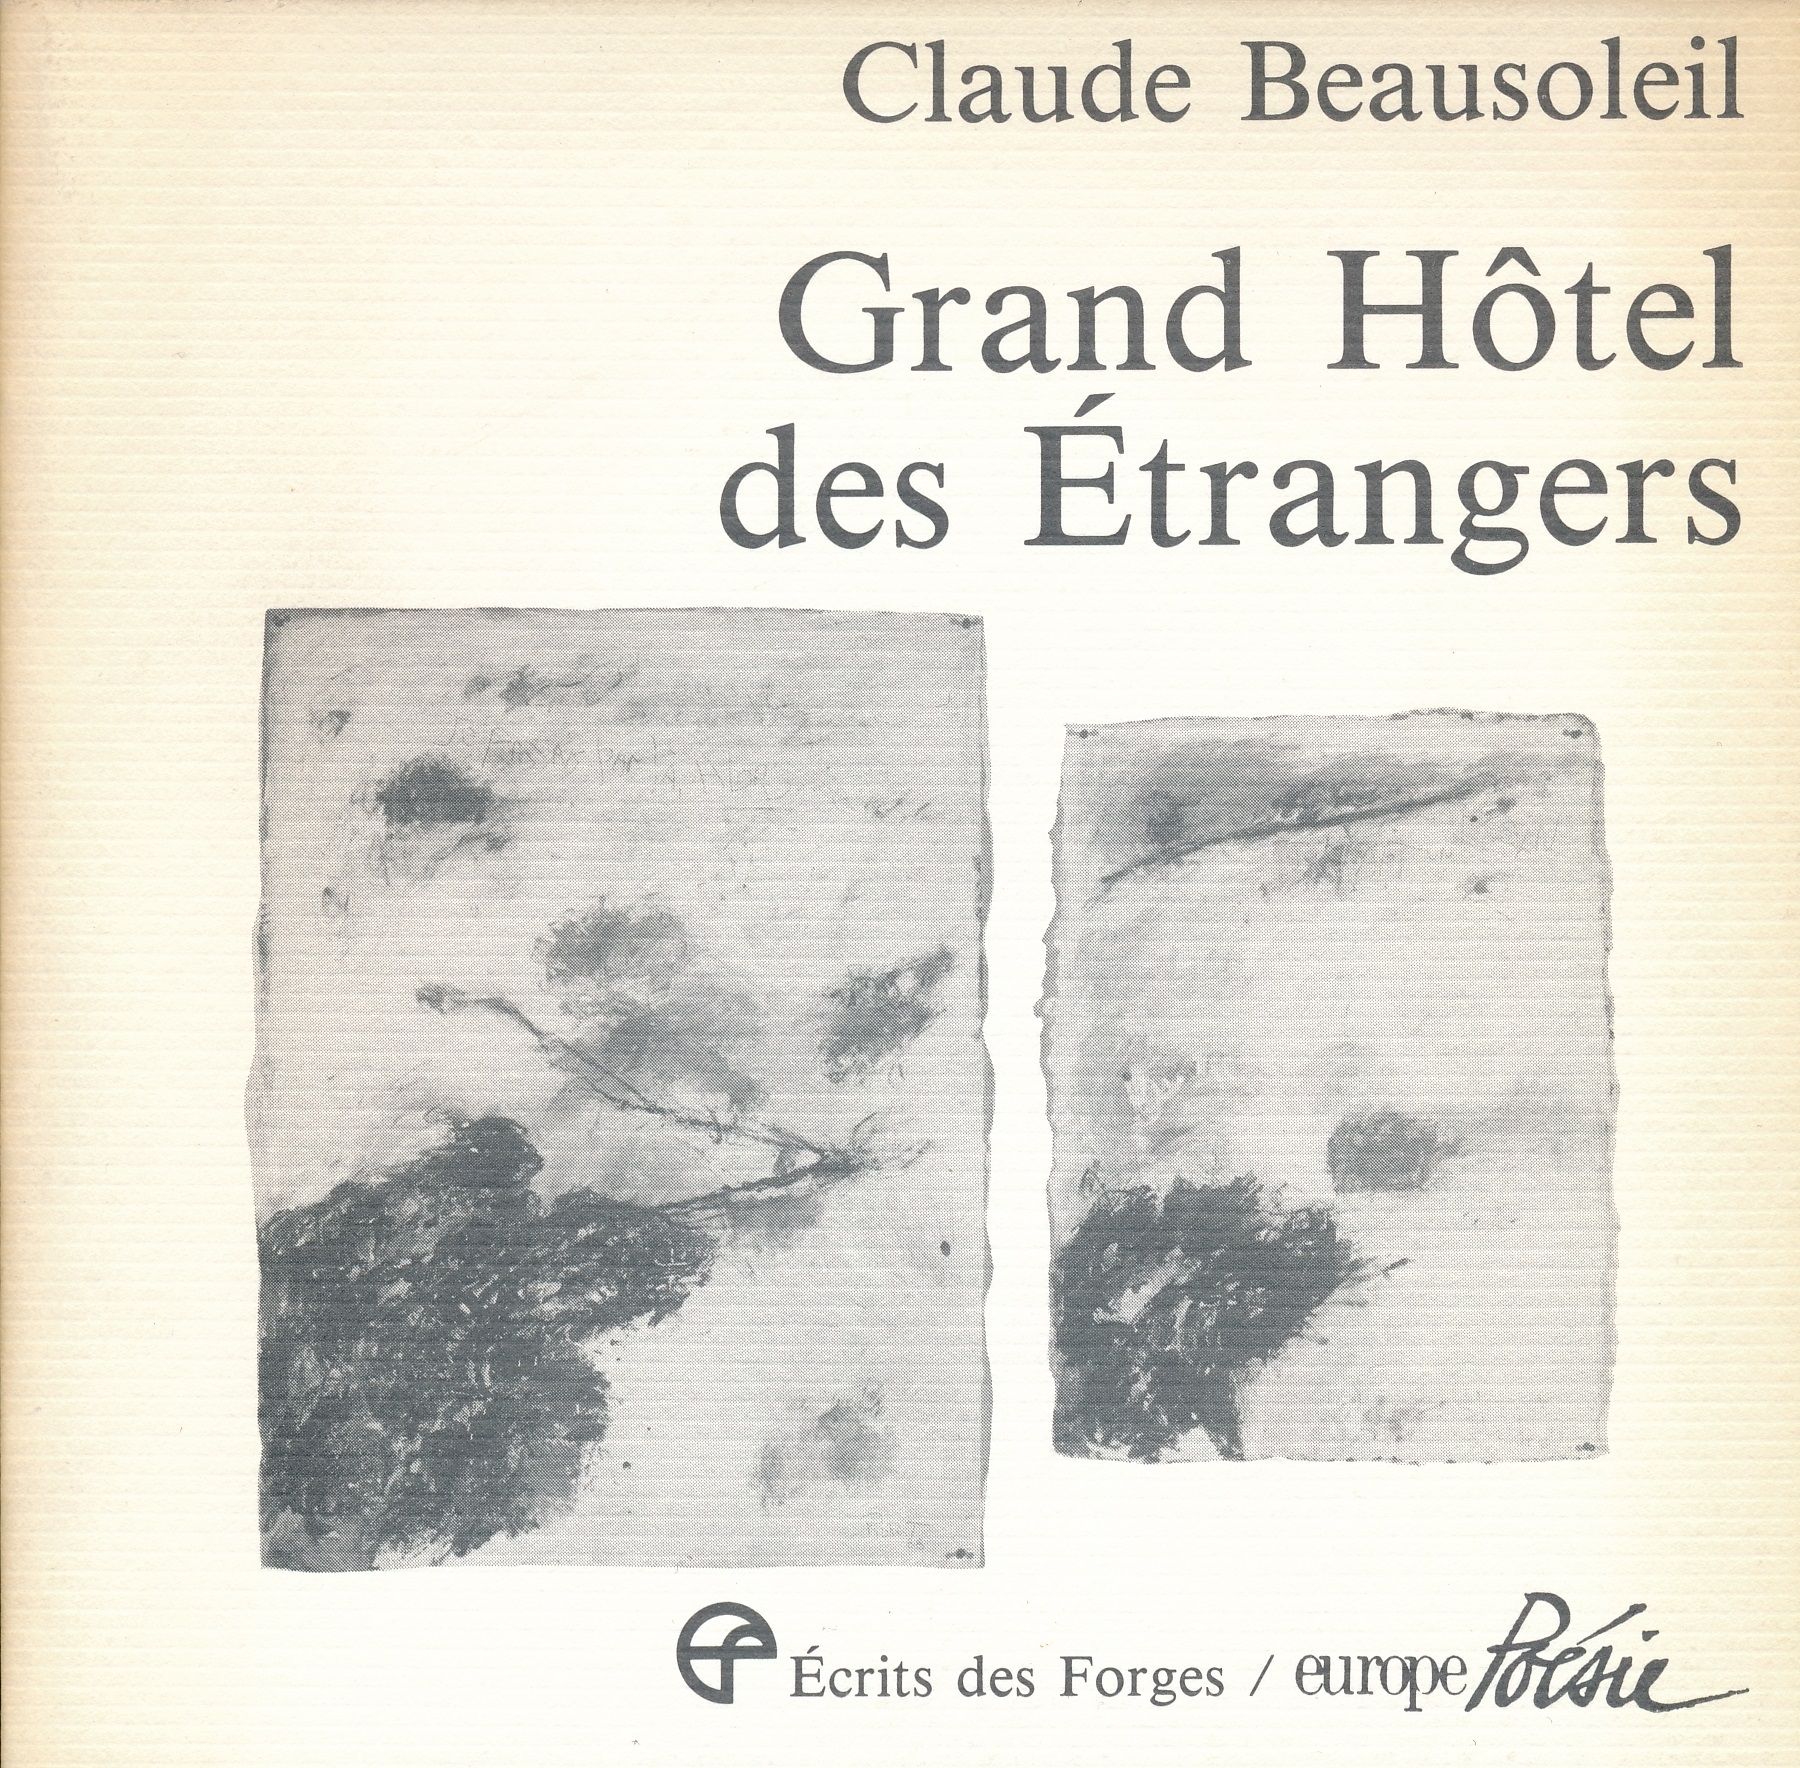 Reproduction en page couverture de N° 534, 1988 et N° 535, 1988 dans Claude BEAUSOLEIL, Grand Hôtel des Étrangers, Ottawa et Paris, Les Écrits des Forges et Europe Poésie.